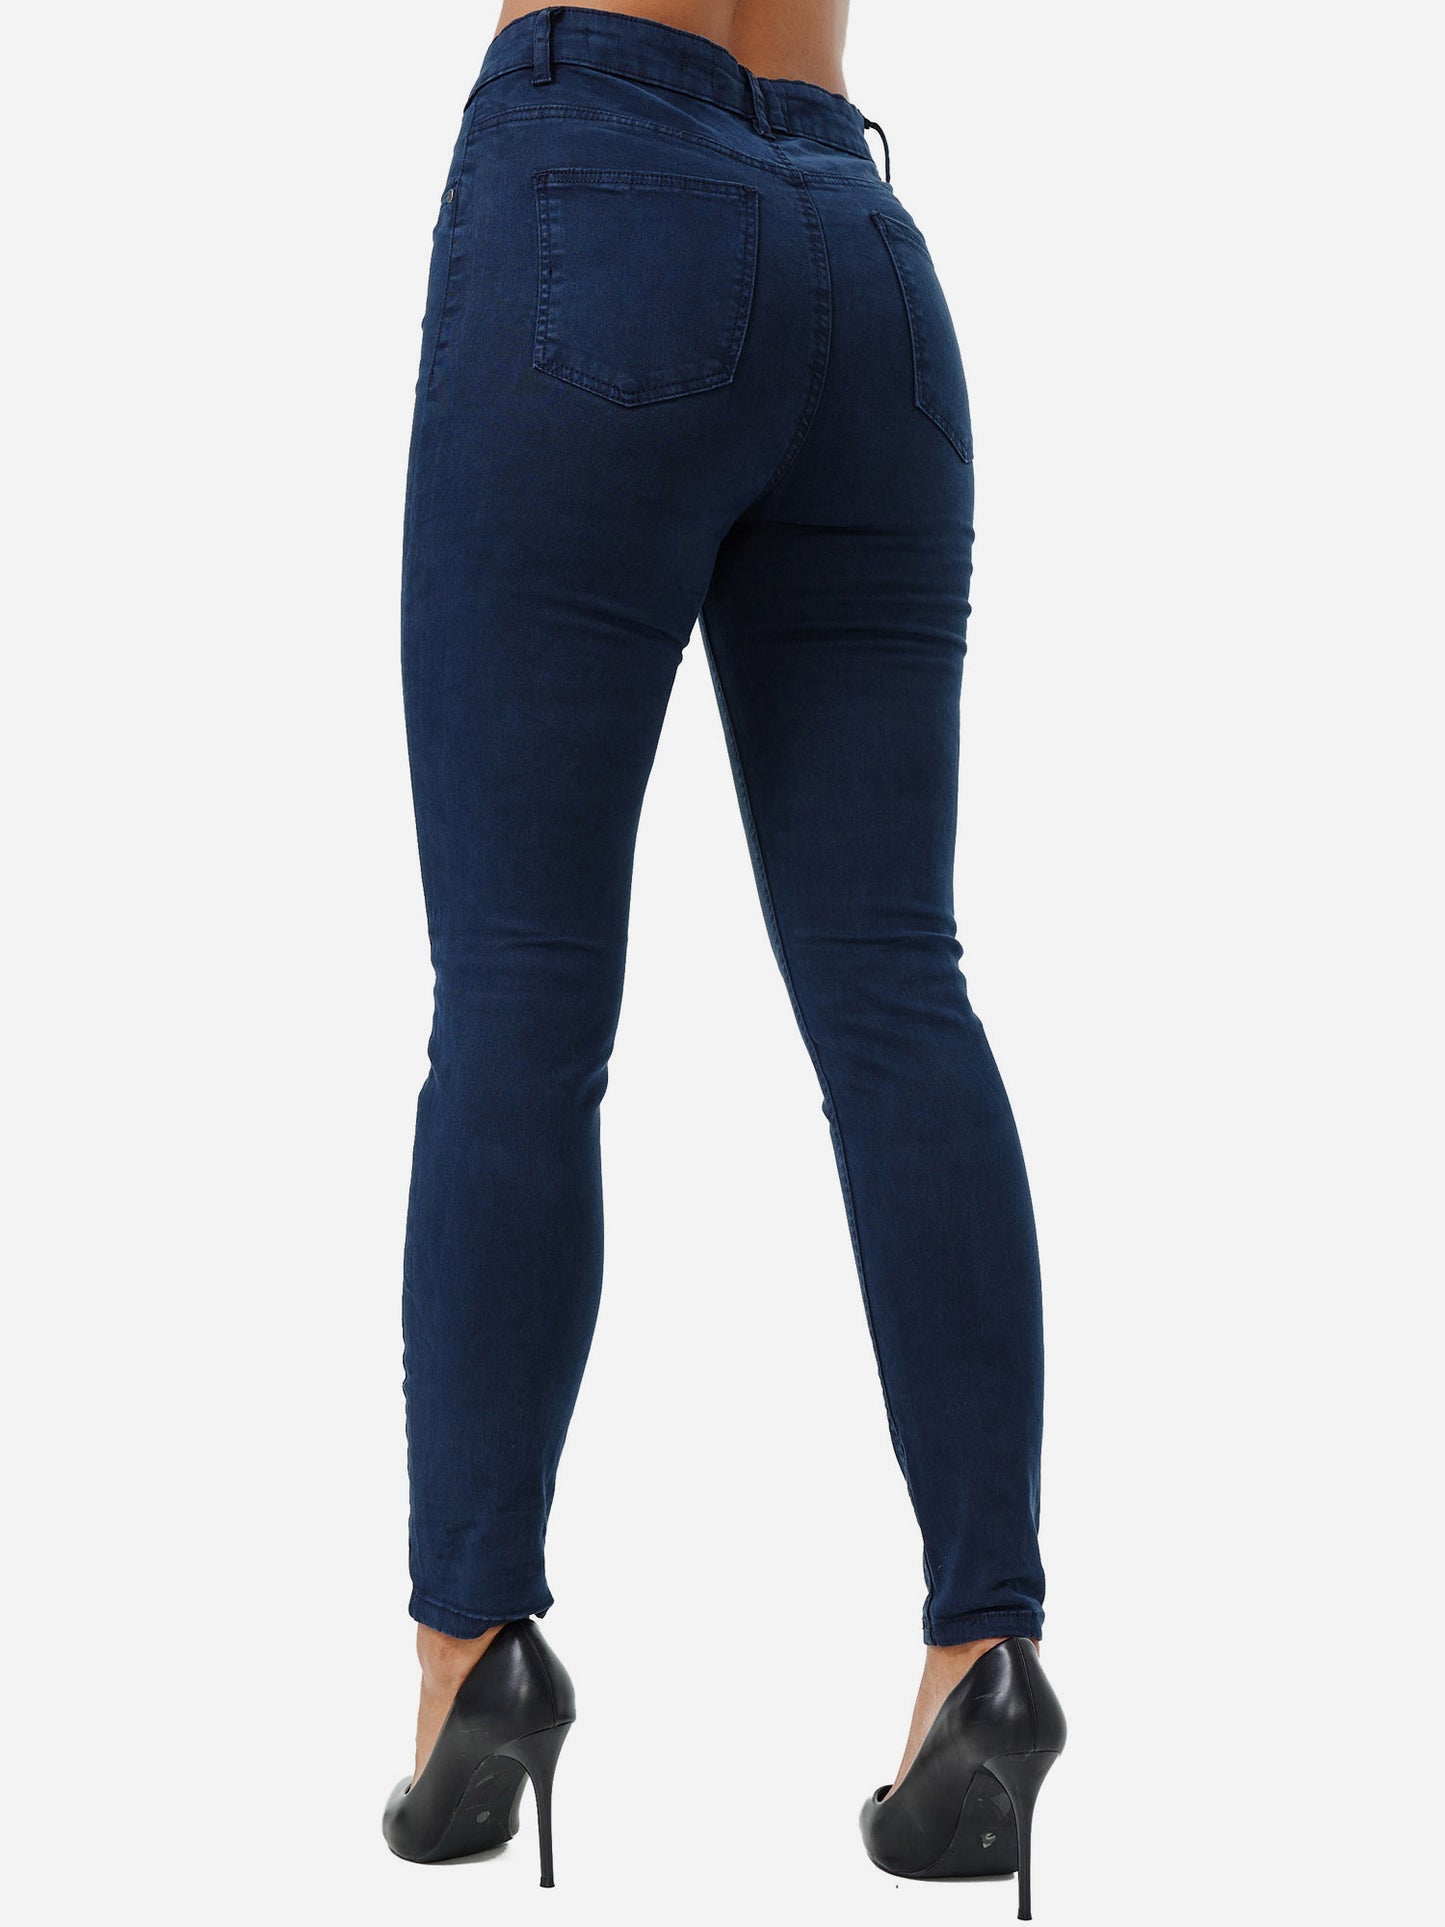 Tazzio Damen Skinny Fit High Rise Jeans F103